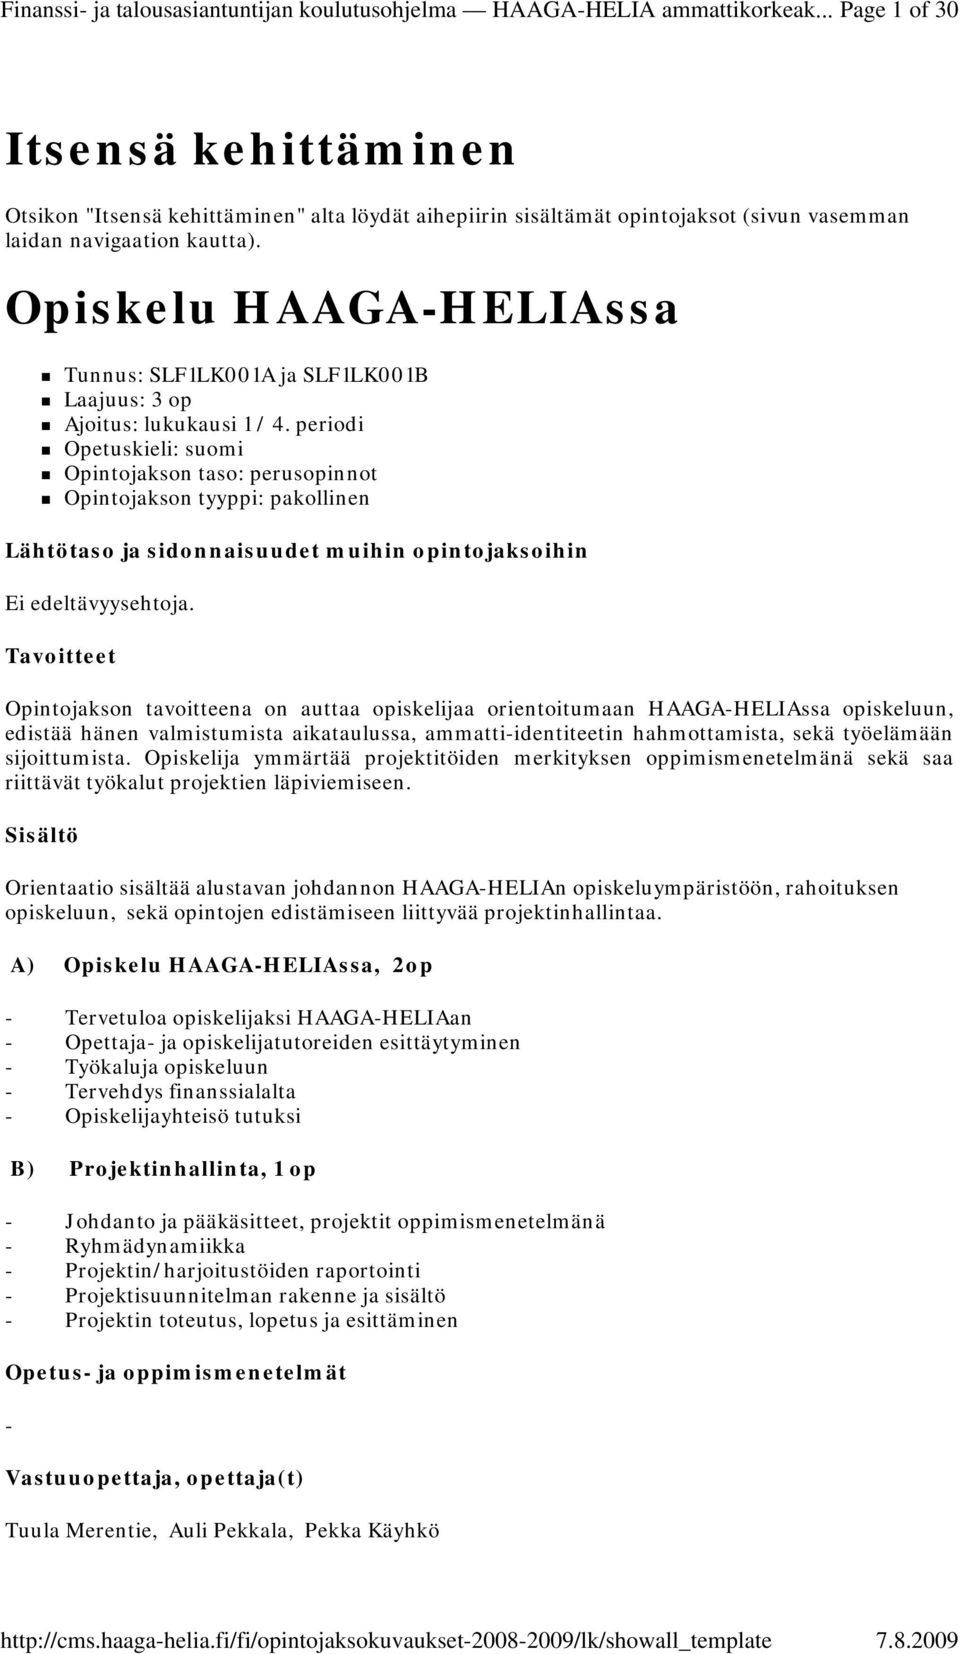 Opiskelu HAAGAHELIAssa Tunnus: SLF1LK001A ja SLF1LK001B Ajoitus: lukukausi 1 / 4. periodi Opetuskieli: suomi Ei edeltävyysehtoja.